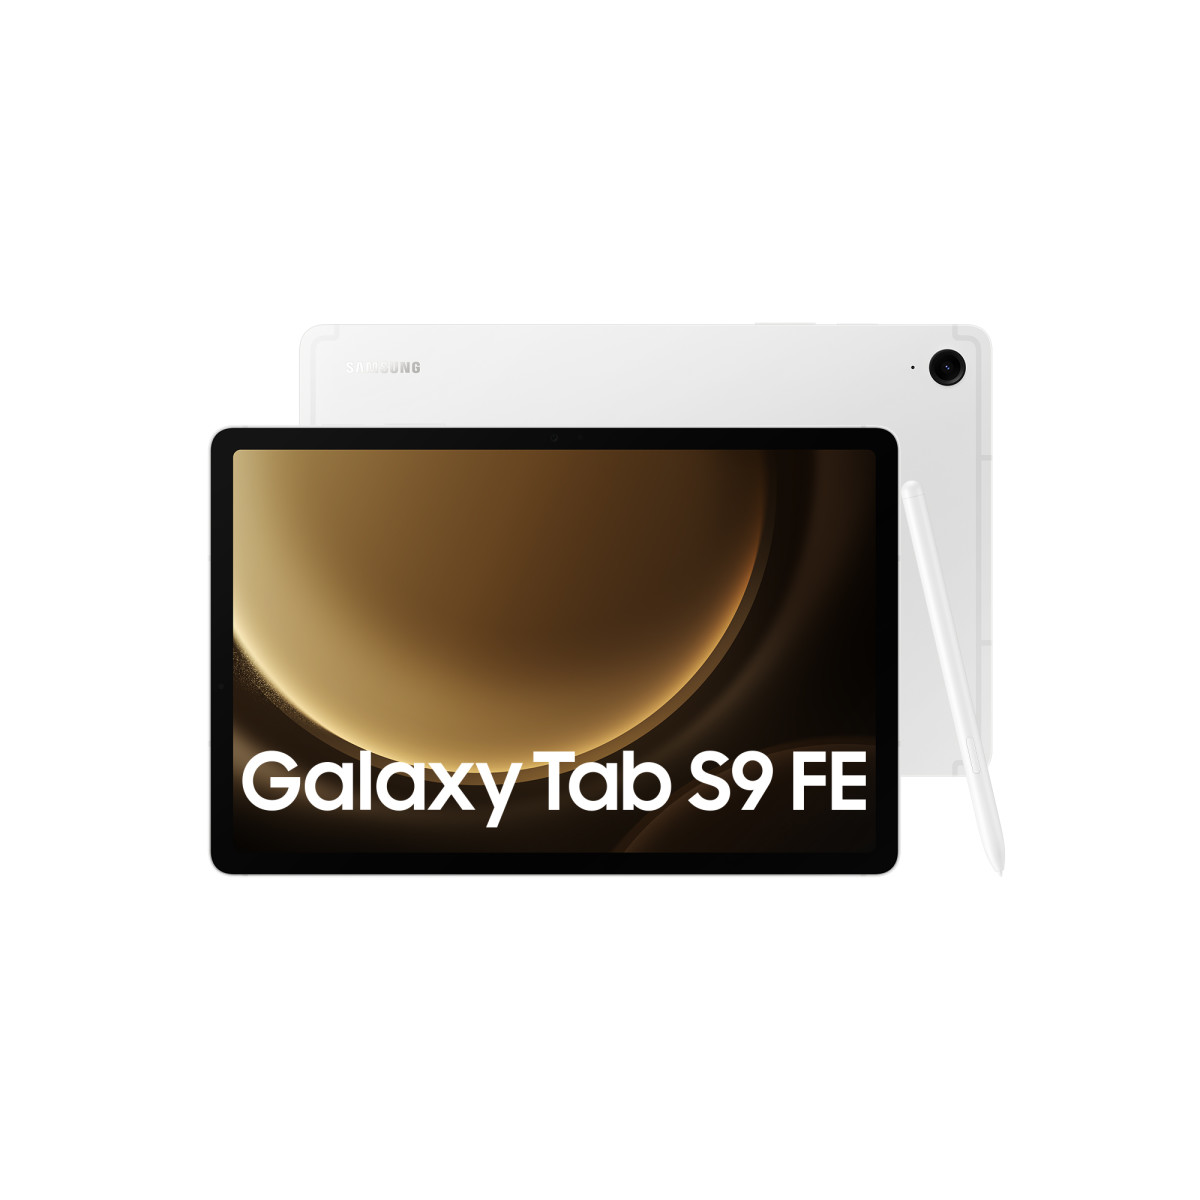 Galaxy Tab S9 FE 128GB Silver